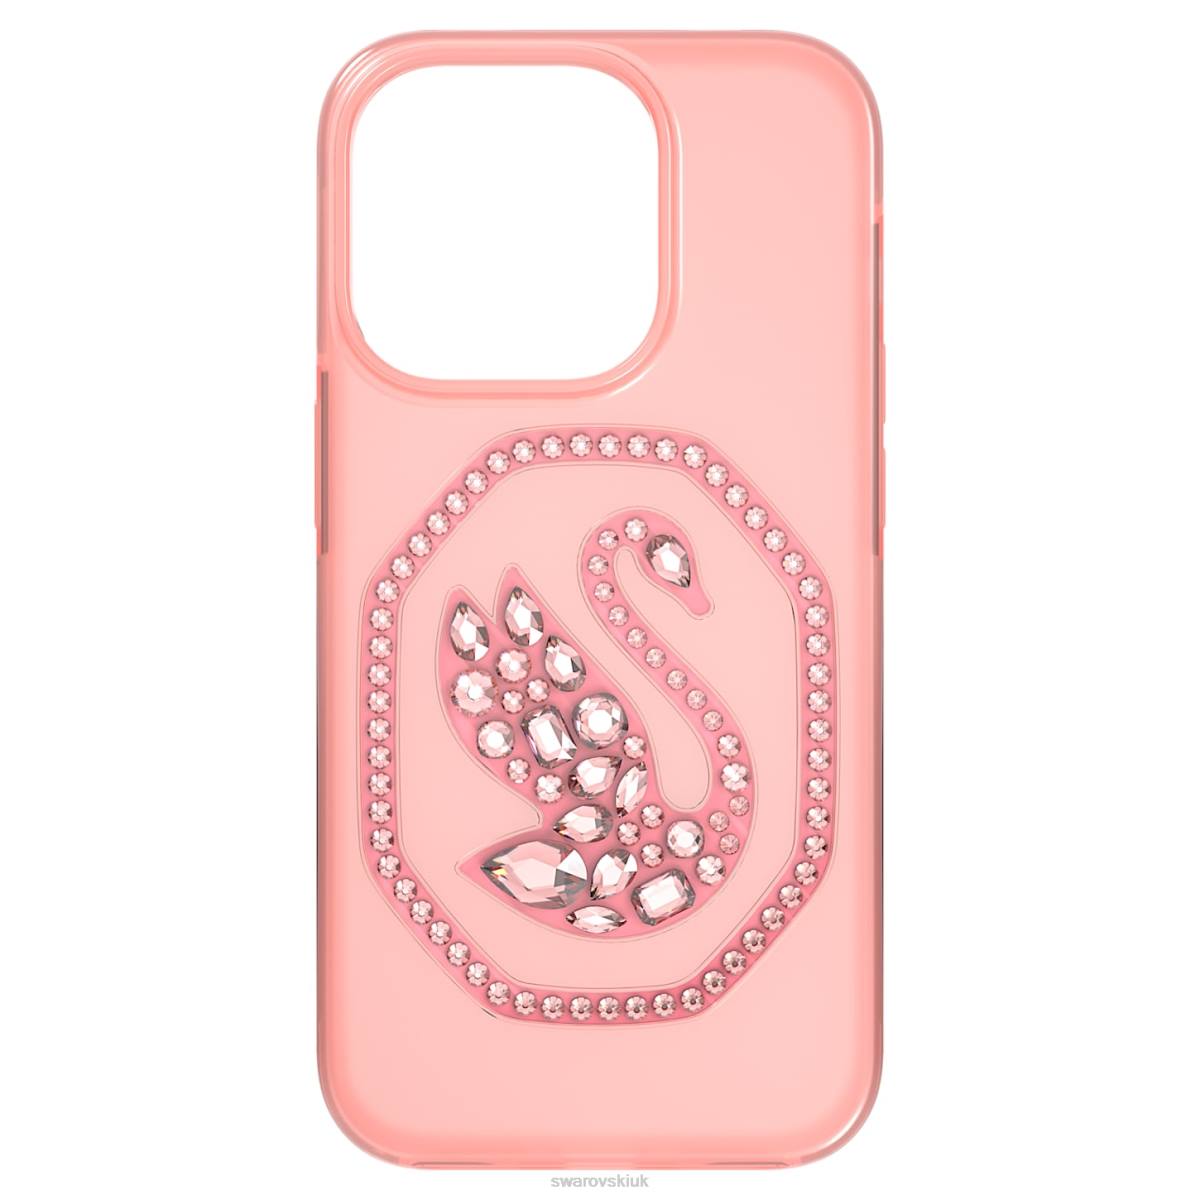 Accessories Swarovski Smartphone case Pale pink 48JX1366